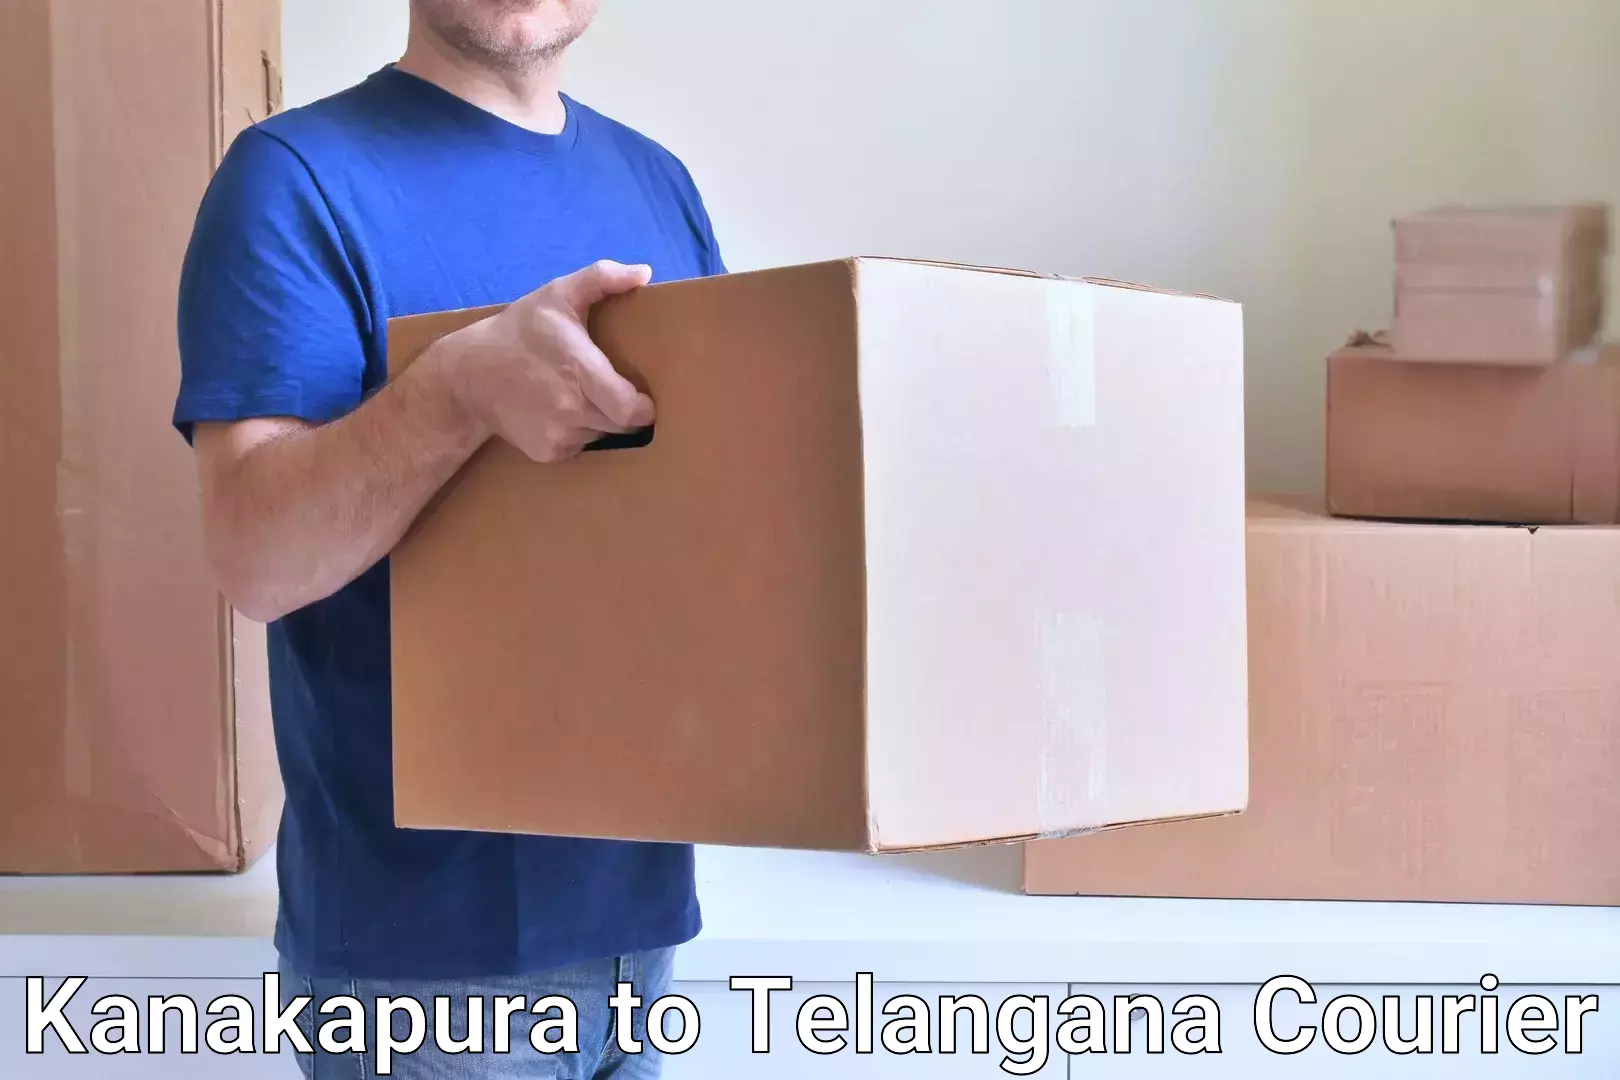 Multi-service courier options Kanakapura to Sadashivpet